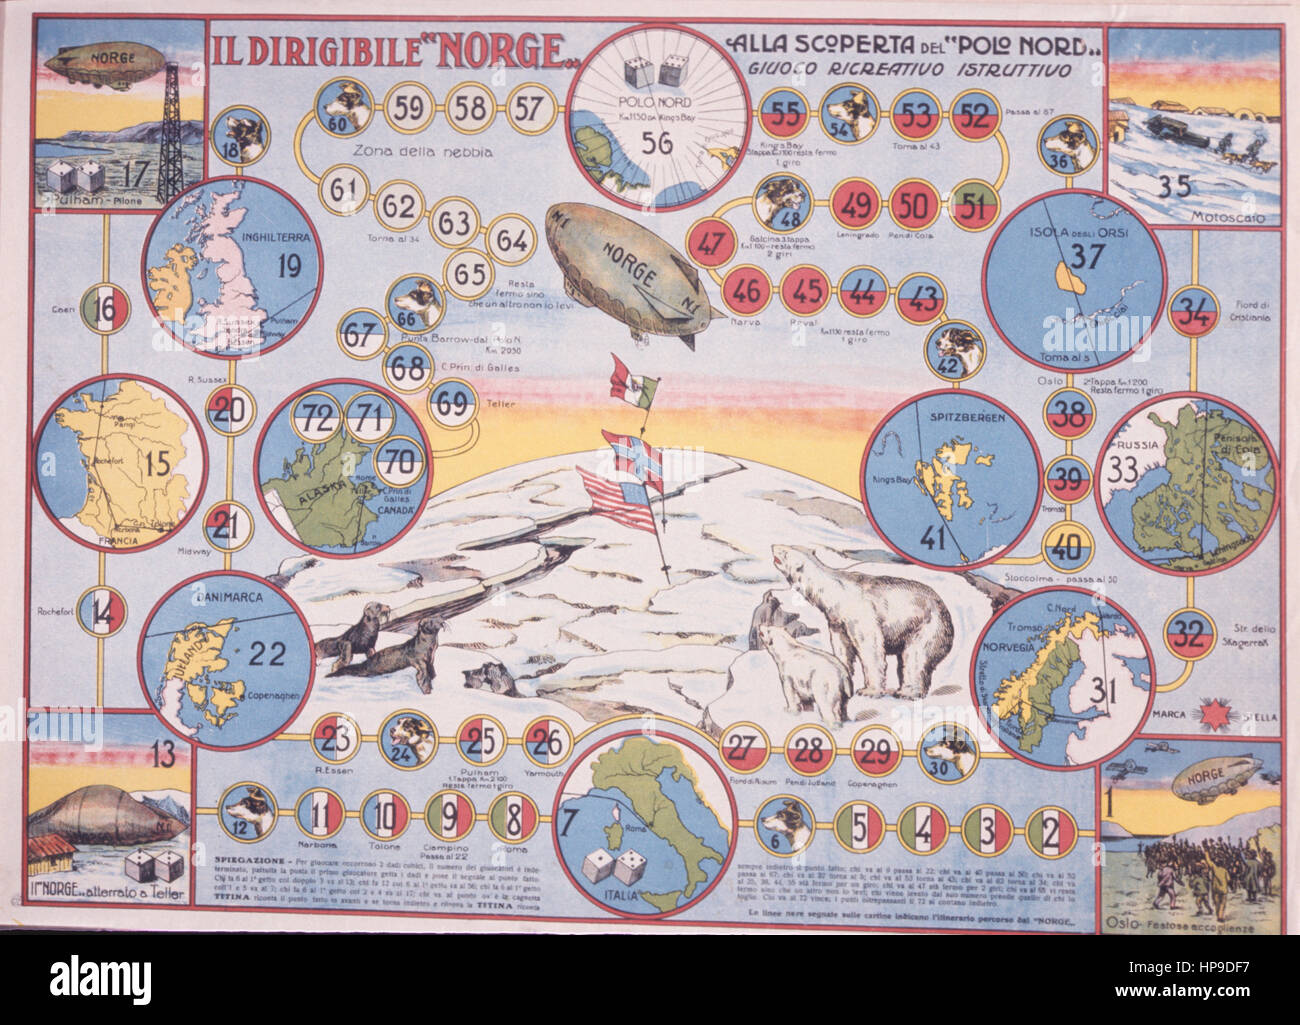 Il Dirigibile Norge, die Entdeckung des Nordpols, Freizeit Lernspiel, 1926 Stockfoto